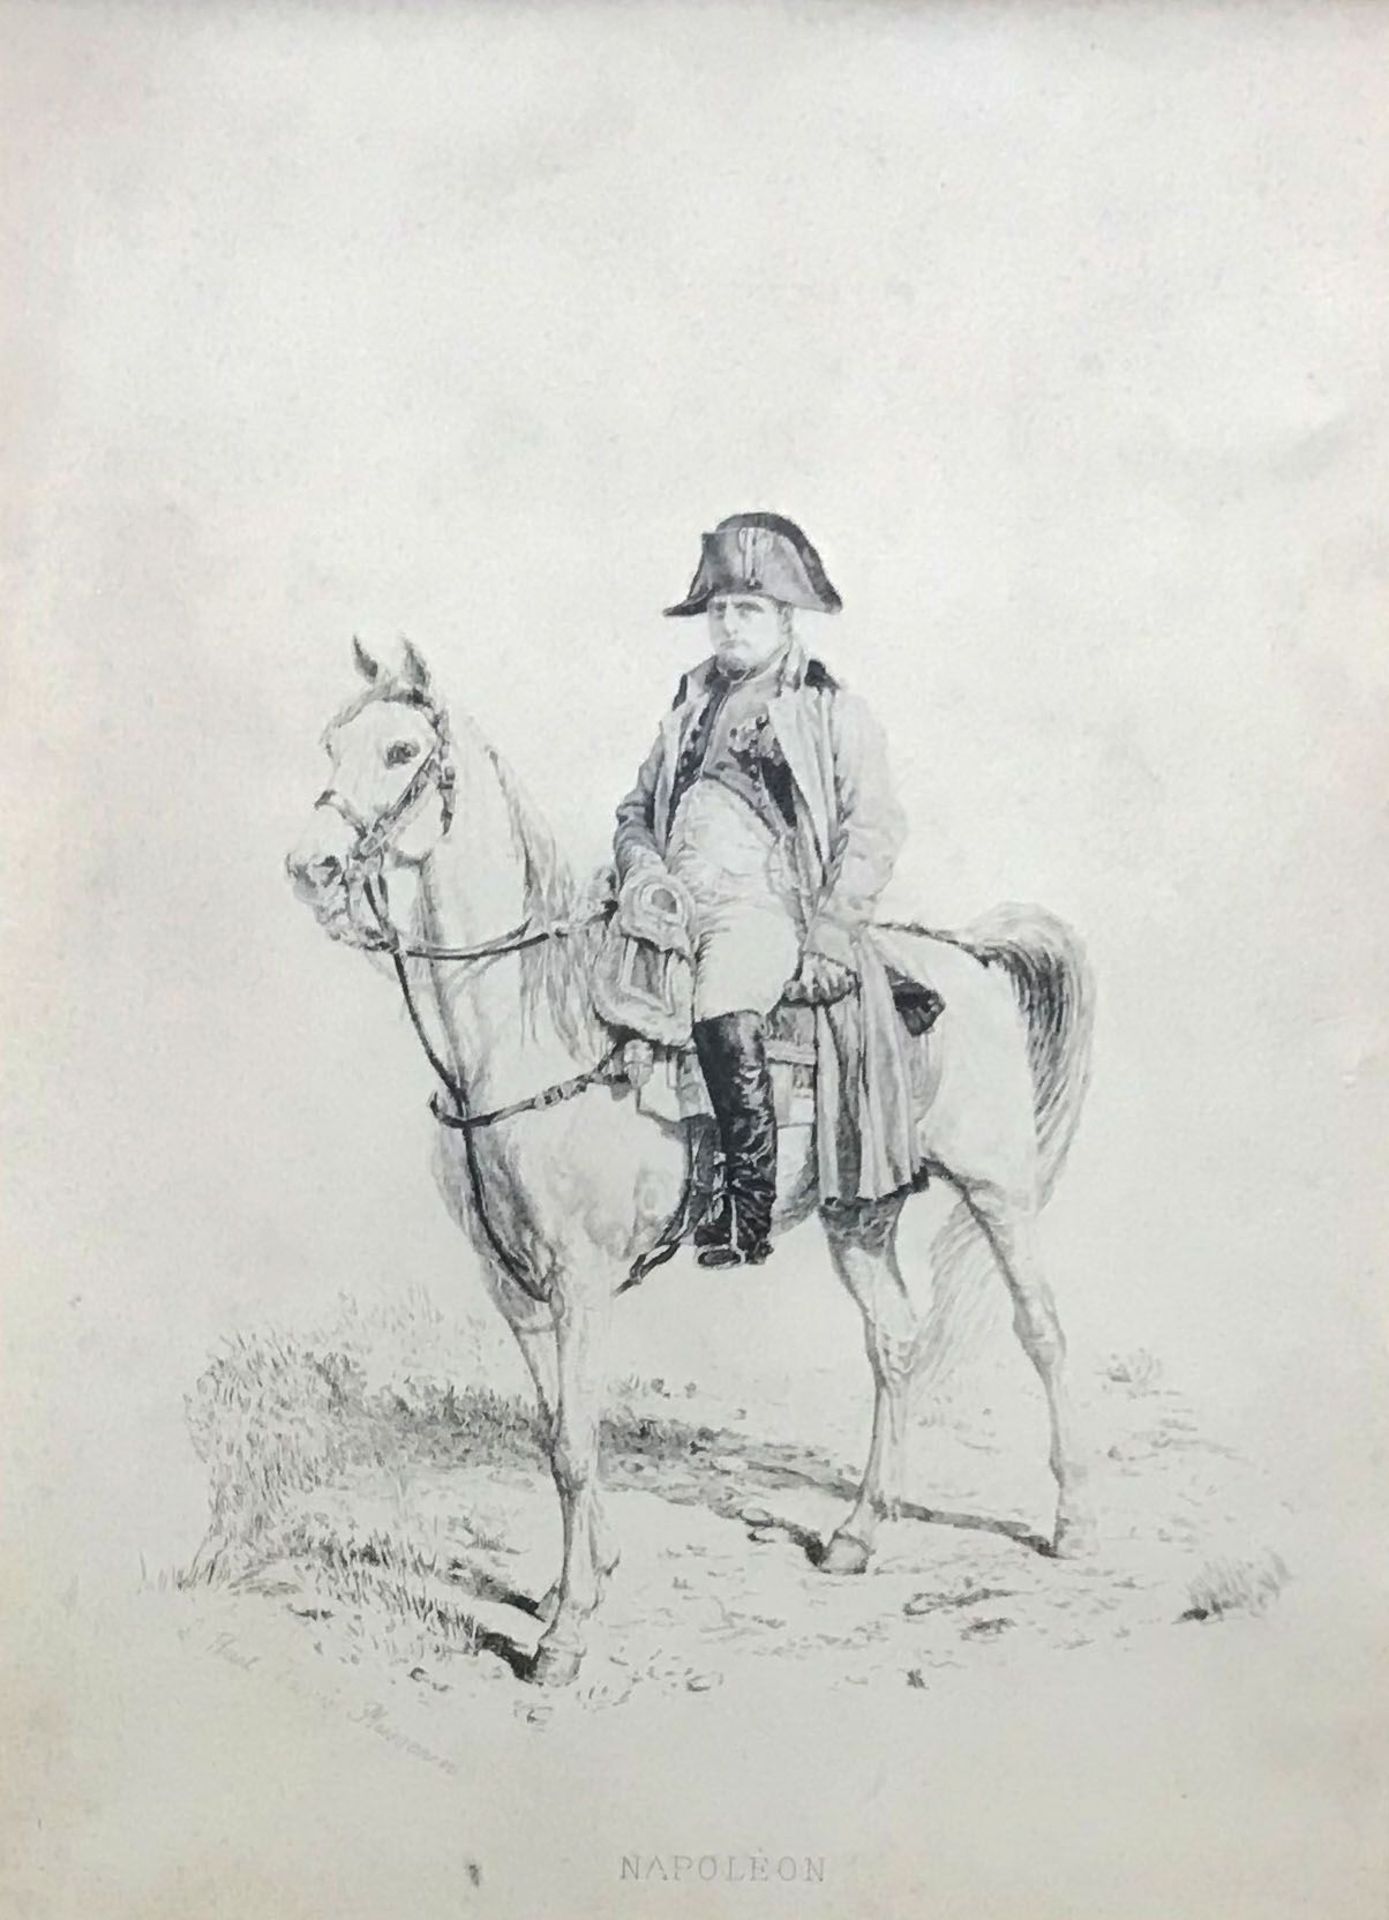 Napoleon zu Pferde, Lithographie, Ruel nach Meissonier, ca. 21 x 15 cm, Altersspuren